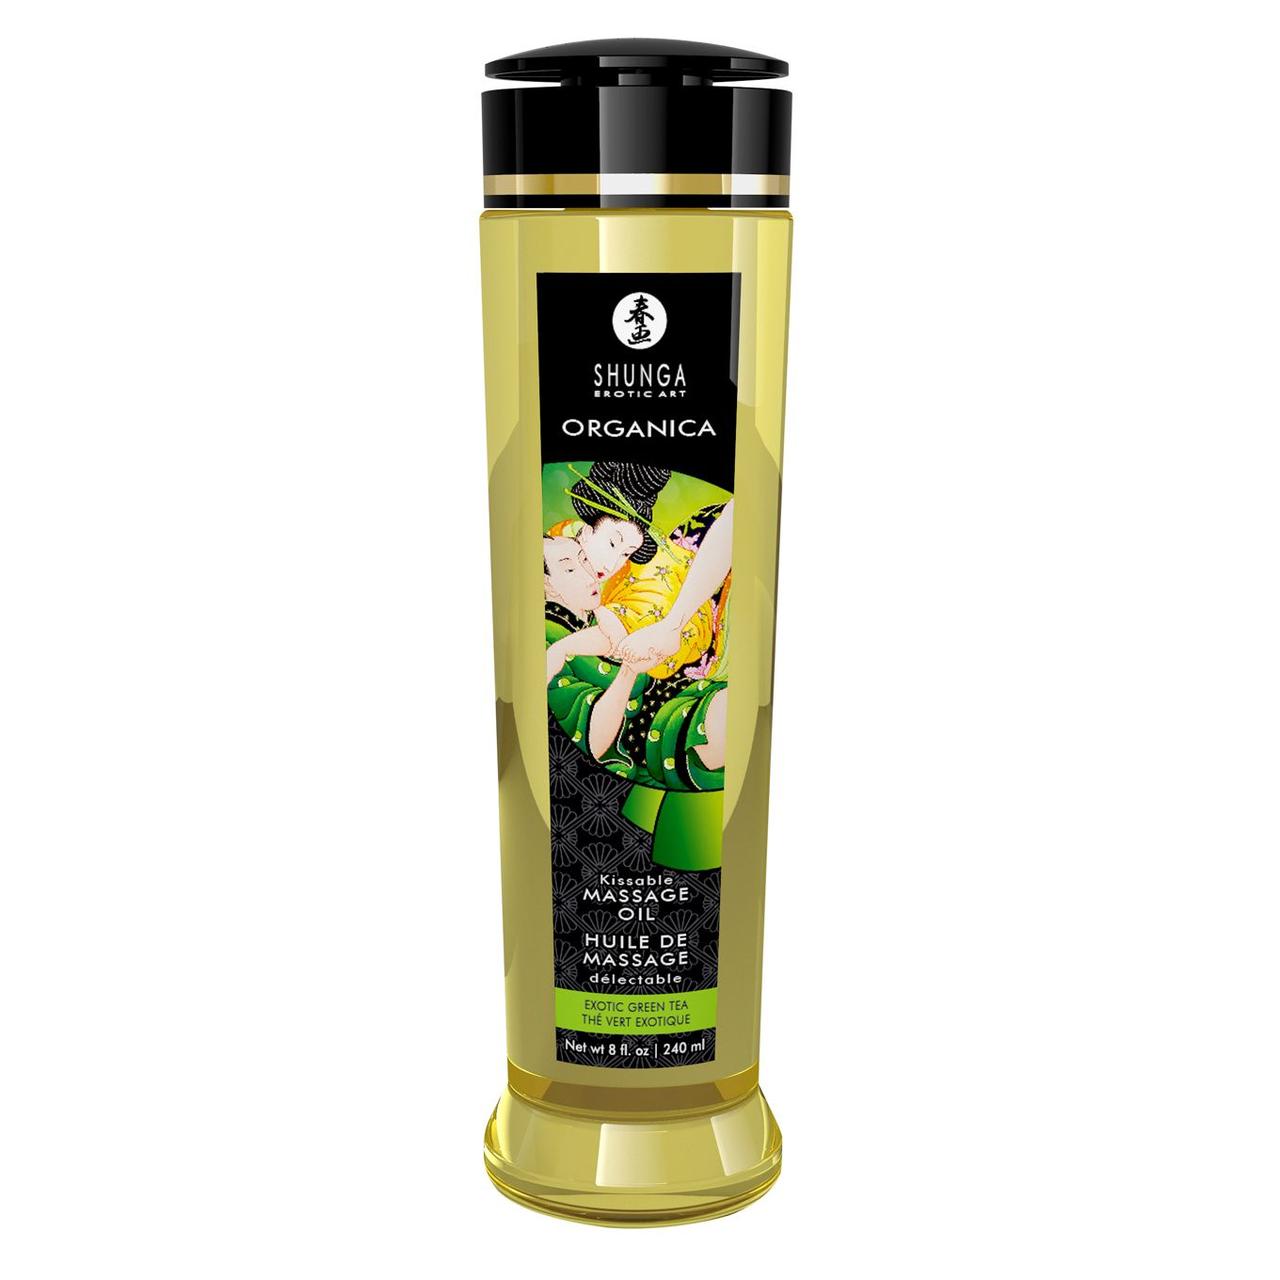 Органічне масажне масло Shunga ORGANICA - Exotic green tea (240 мл) з вітаміном Е